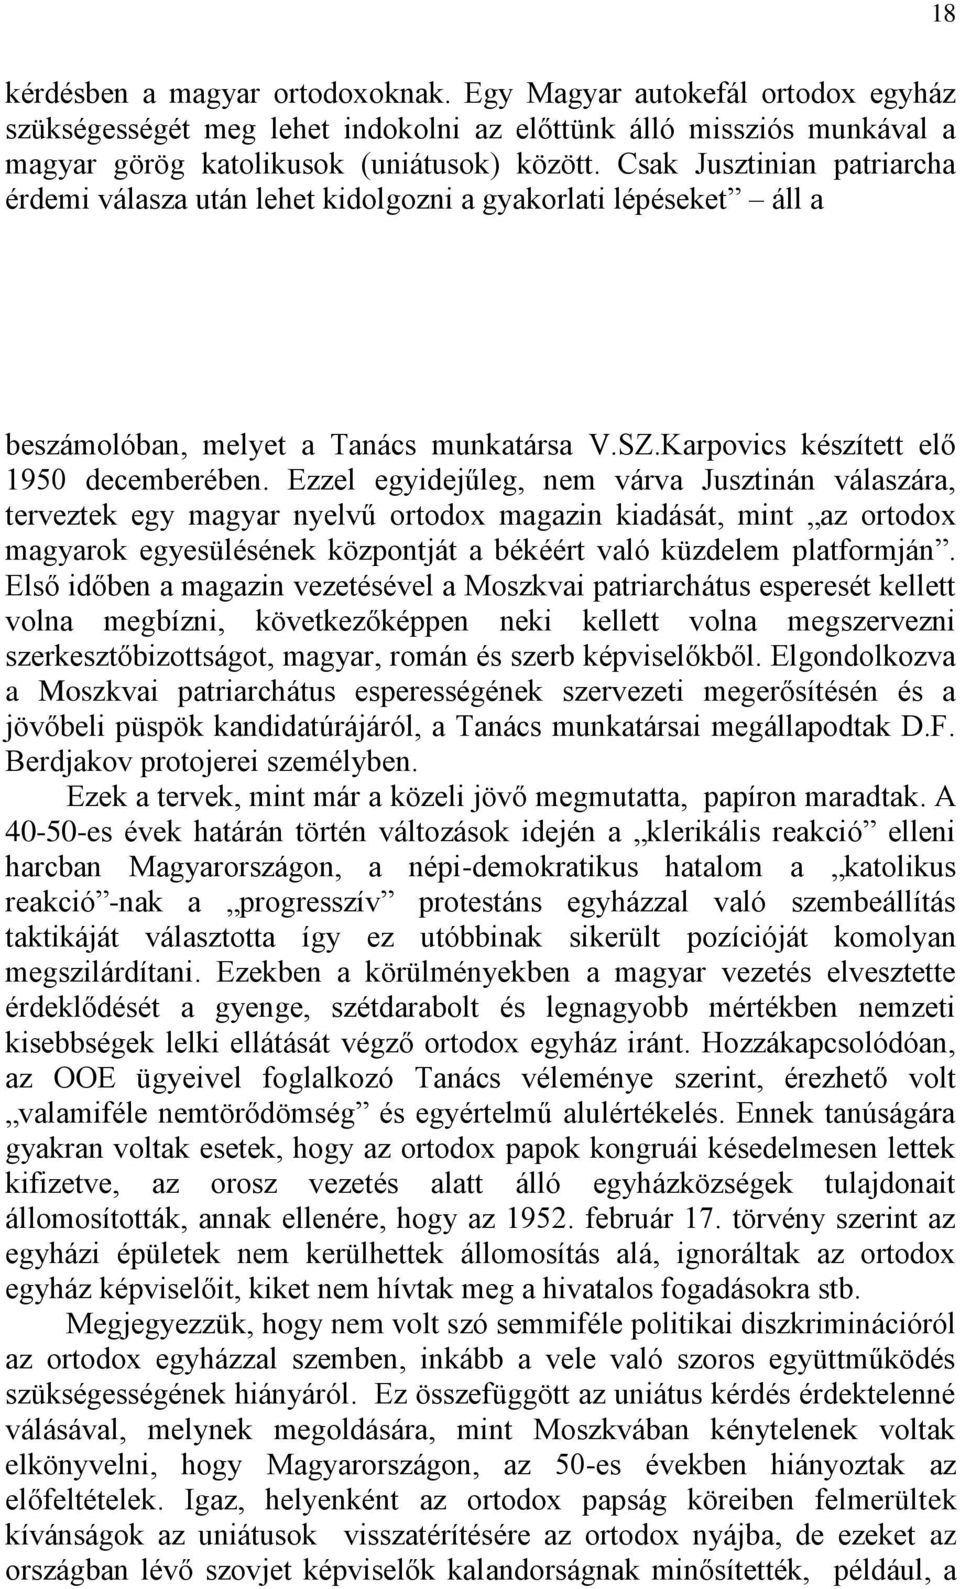 Ezzel egyidejűleg, nem várva Jusztinán válaszára, terveztek egy magyar nyelvű ortodox magazin kiadását, mint az ortodox magyarok egyesülésének központját a békéért való küzdelem platformján.